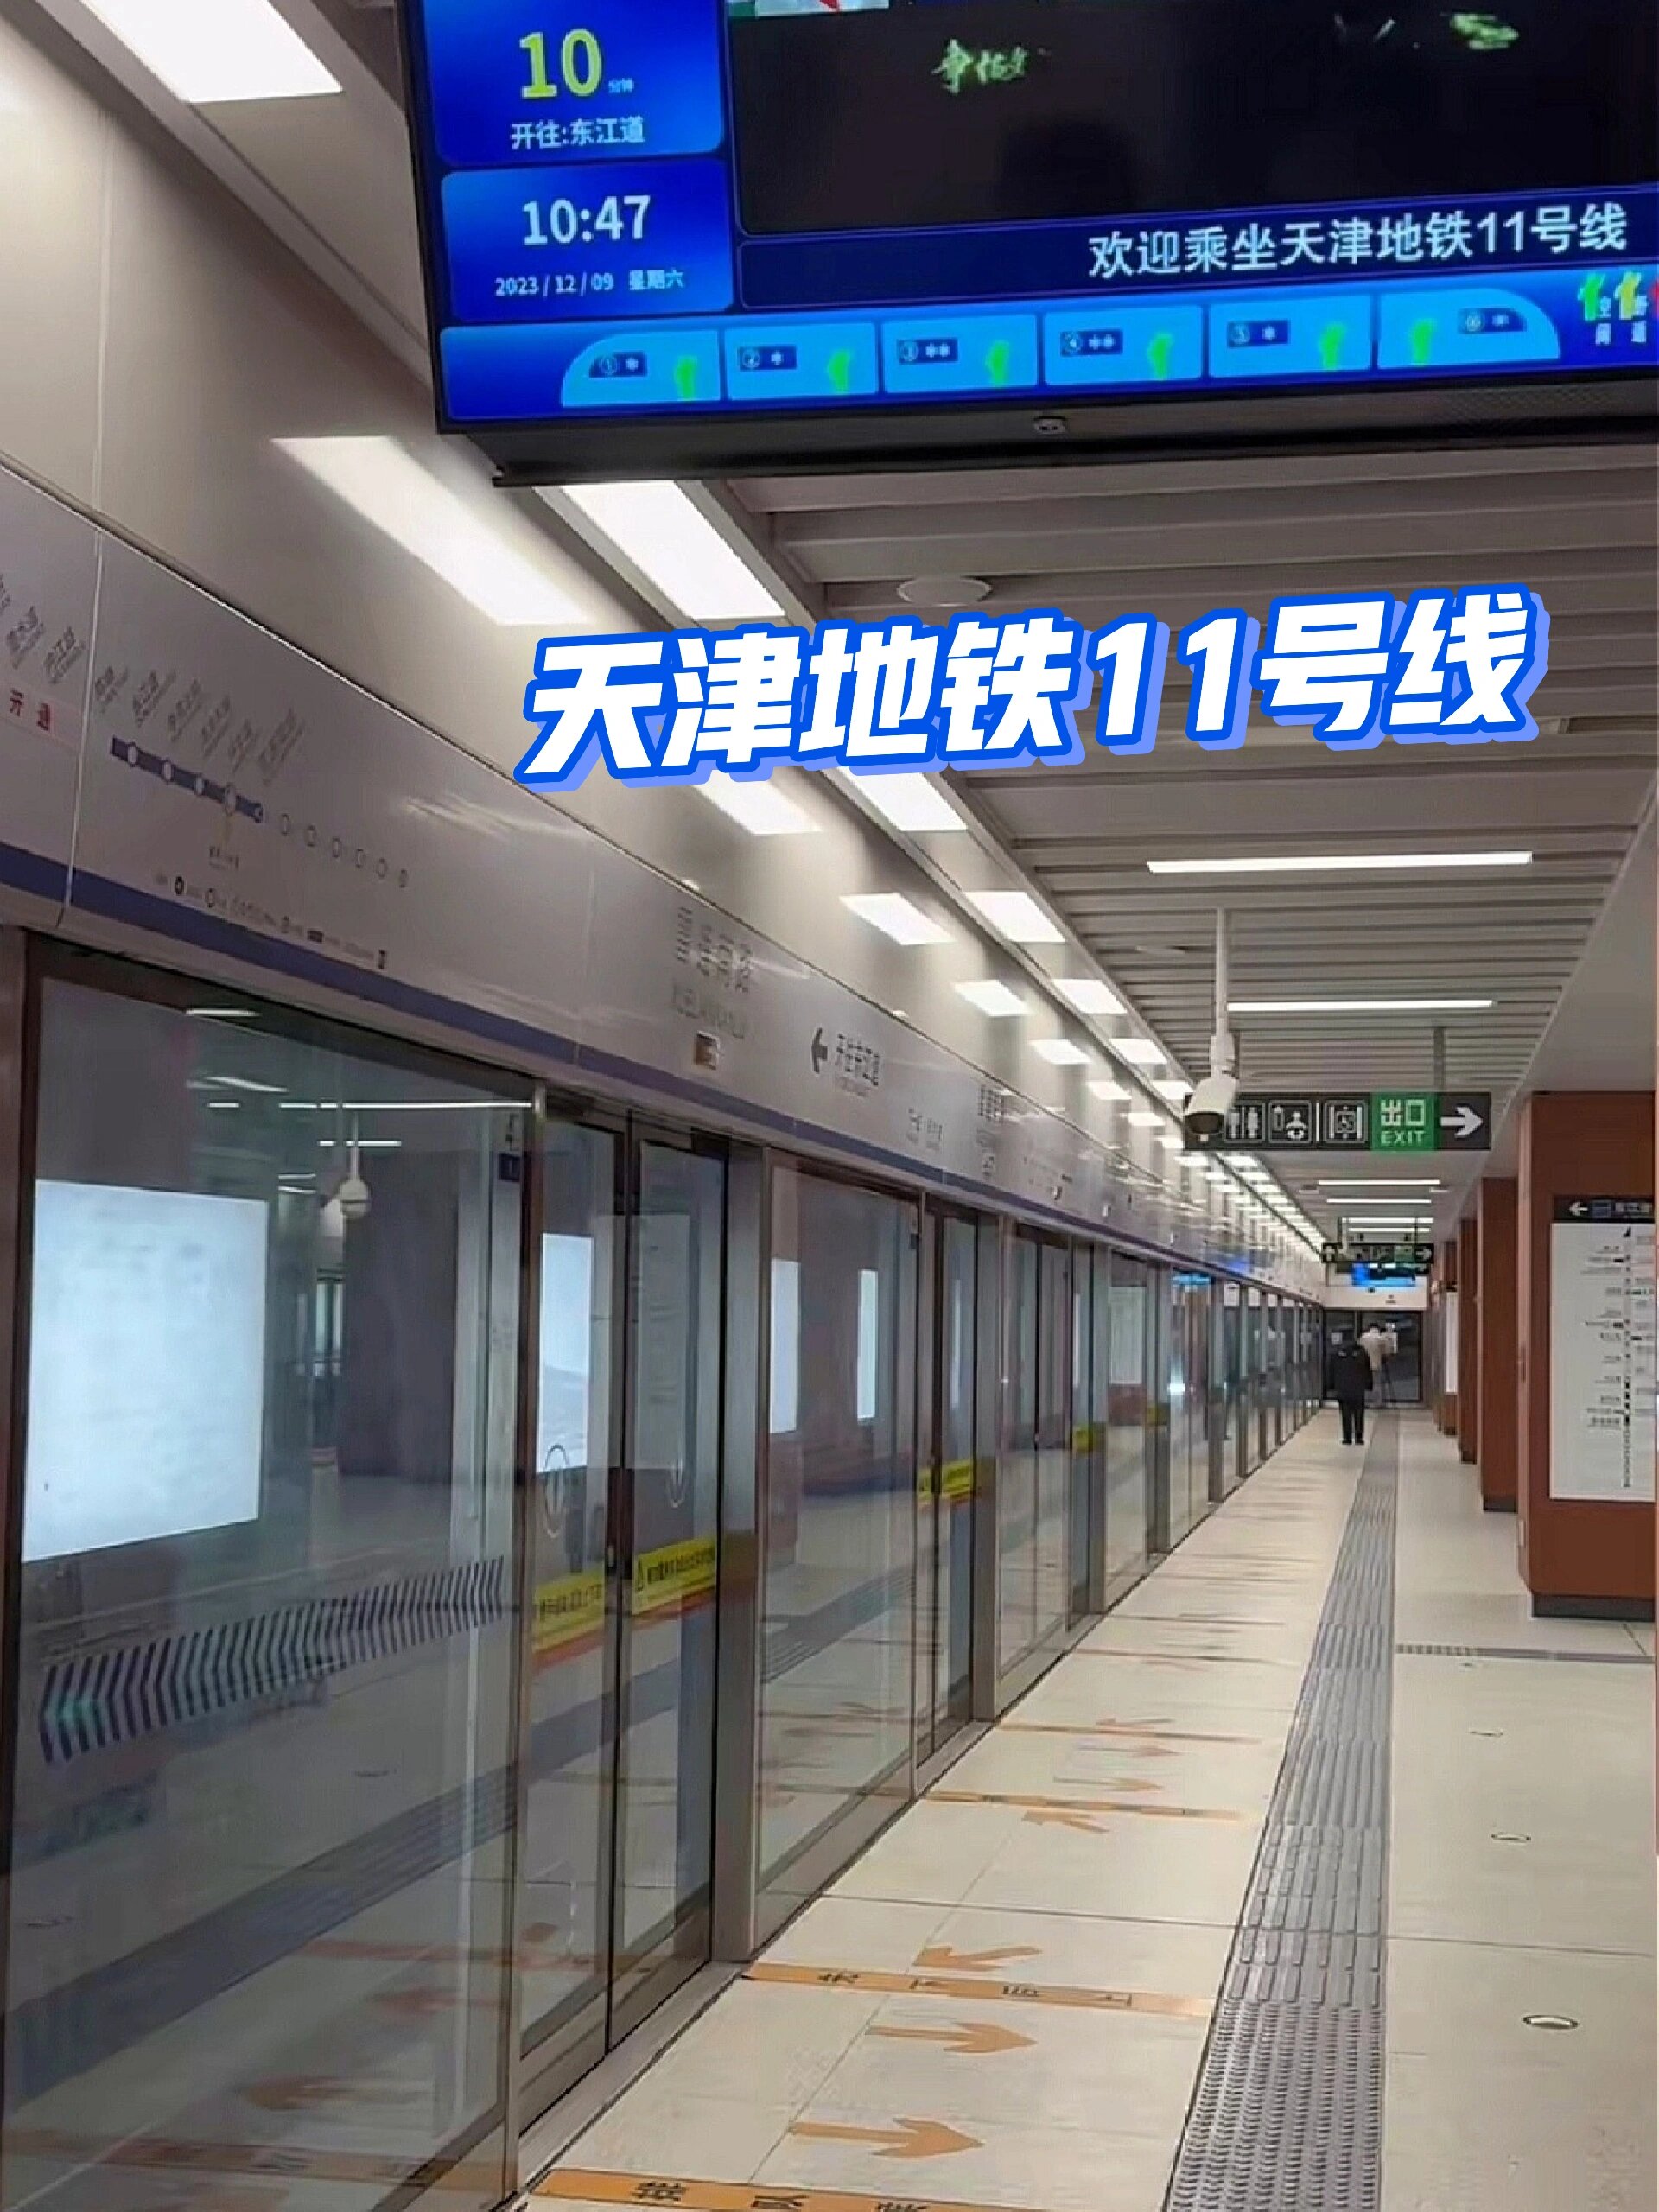 即将开通欢迎乘坐天津地铁11号线01